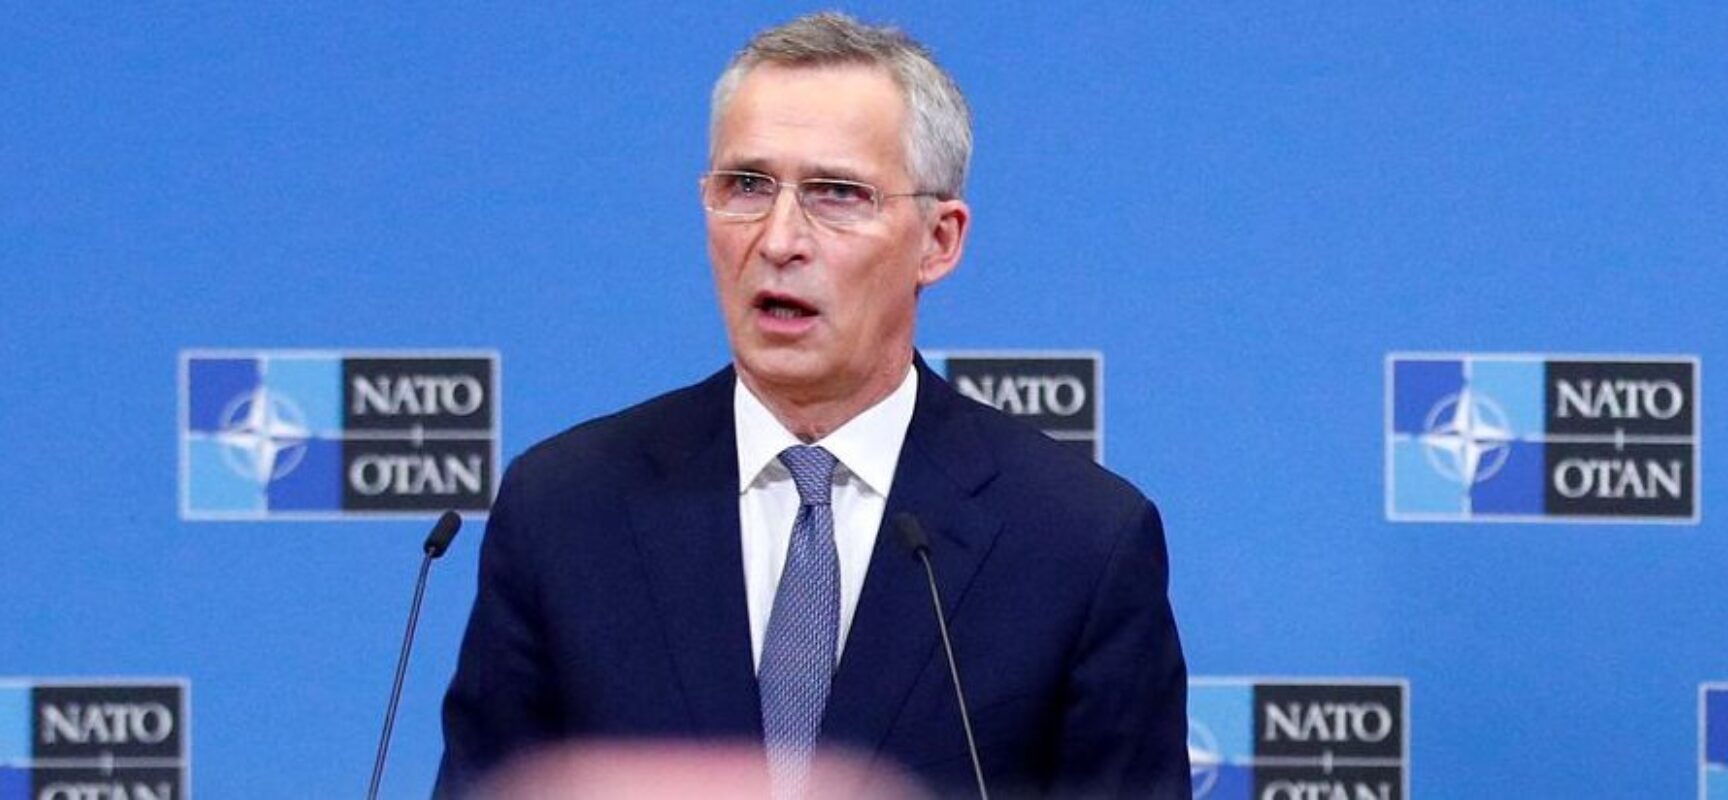 Otan oferece negociações com Rússia para evitar risco de conflito